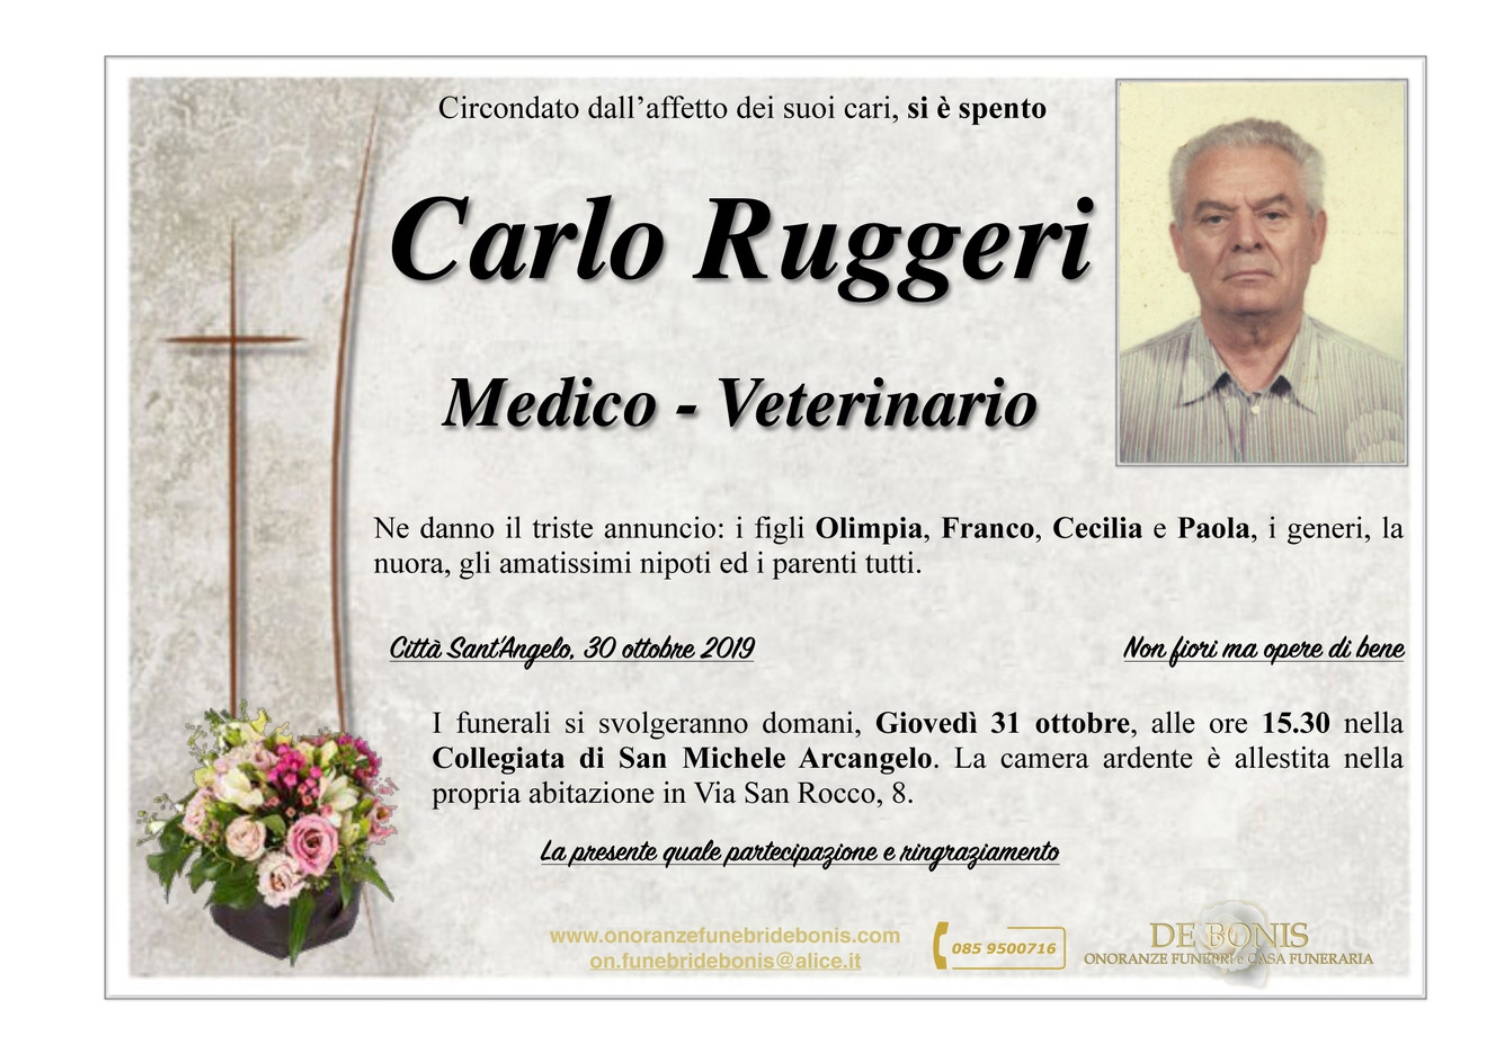 Carlo Ruggeri